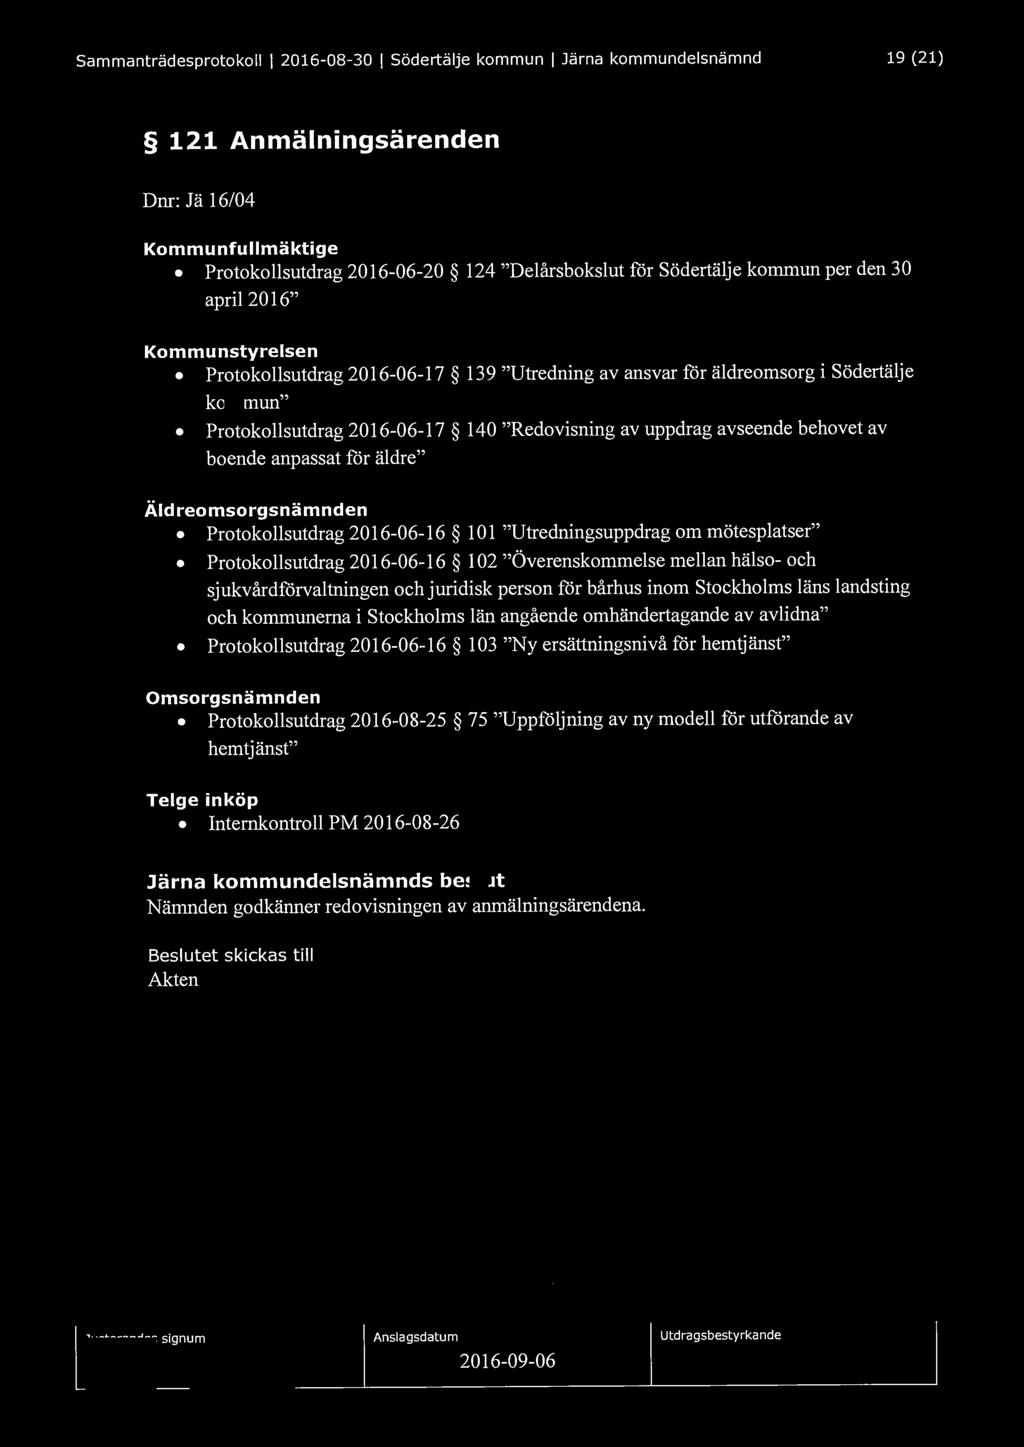 Sammanträdesprotokoll l 2016-08-30 l Södertälje kommun l Järna kommundelsnämnd 19 (21) 121 Anmälningsärenden Dnr: Jä 16/04 Kommunfullmäktige Protokollsutdrag 2016-06-20 124 "Delårsbokslut